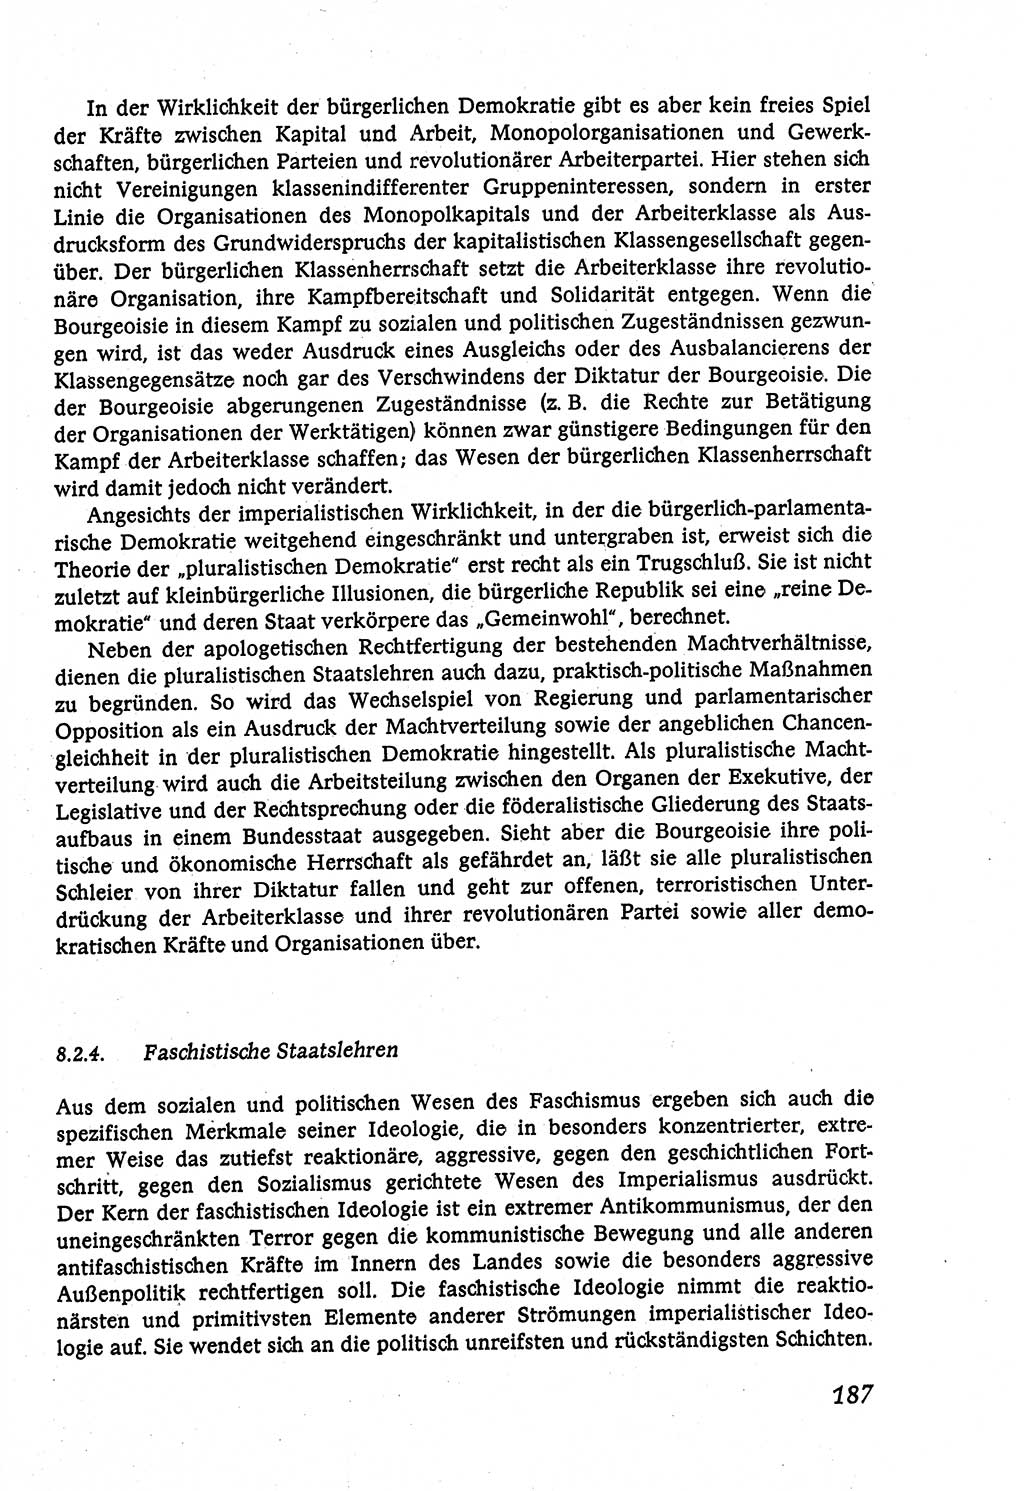 Marxistisch-leninistische (ML) Staats- und Rechtstheorie [Deutsche Demokratische Republik (DDR)], Lehrbuch 1980, Seite 187 (ML St.-R.-Th. DDR Lb. 1980, S. 187)